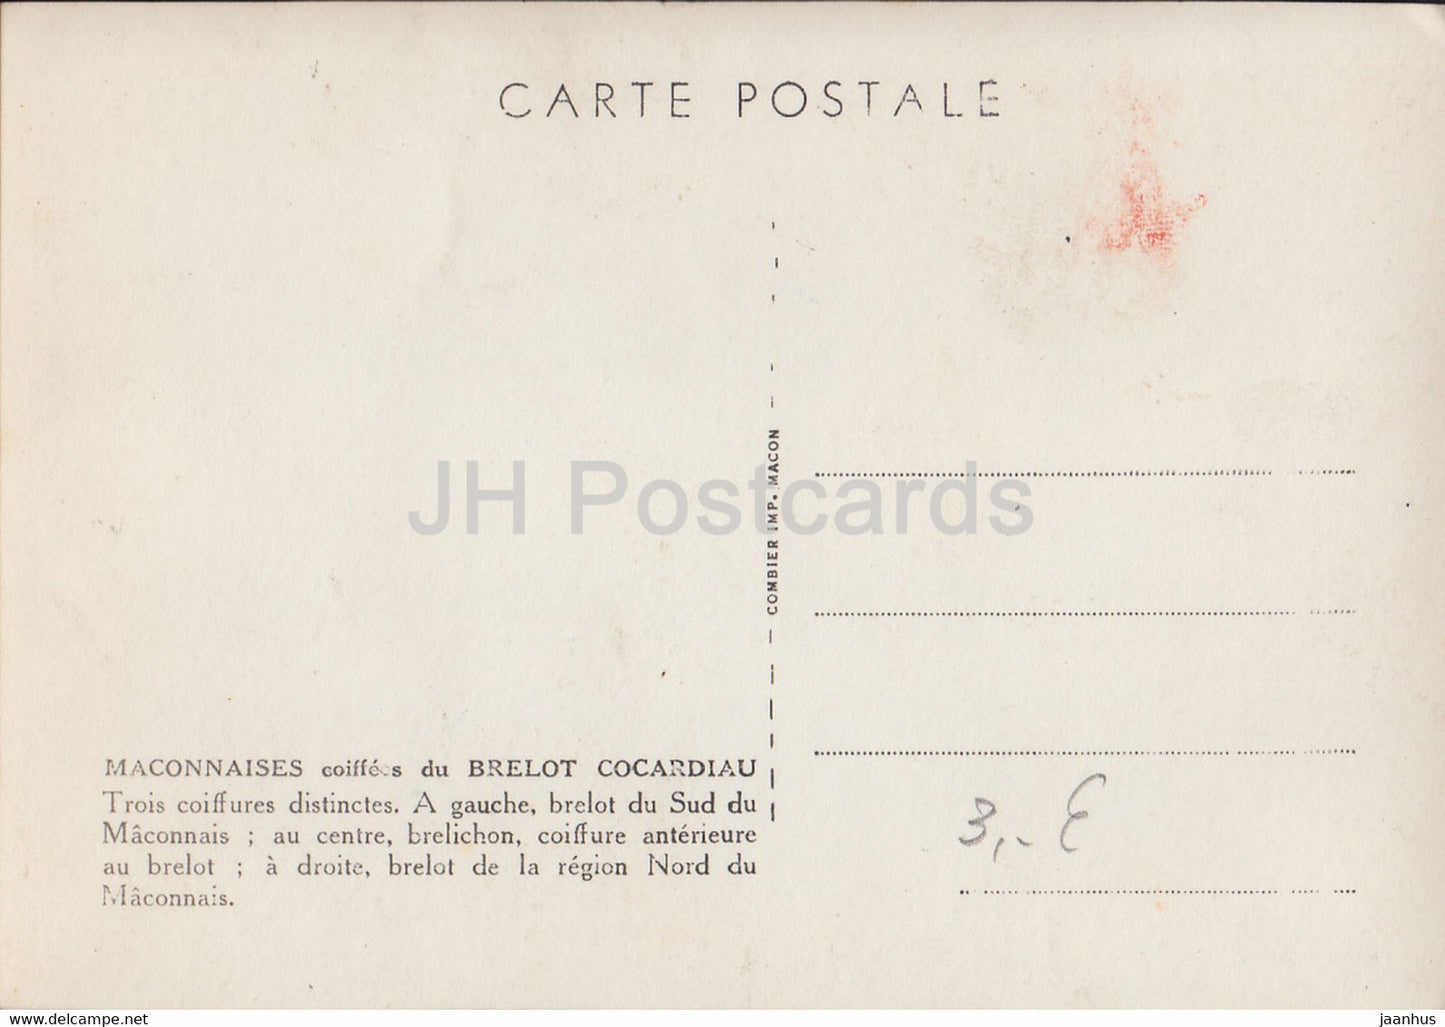 Maconnaises - Brelot Cocardiau - costumes folkloriques - carte postale ancienne - France - inutilisée